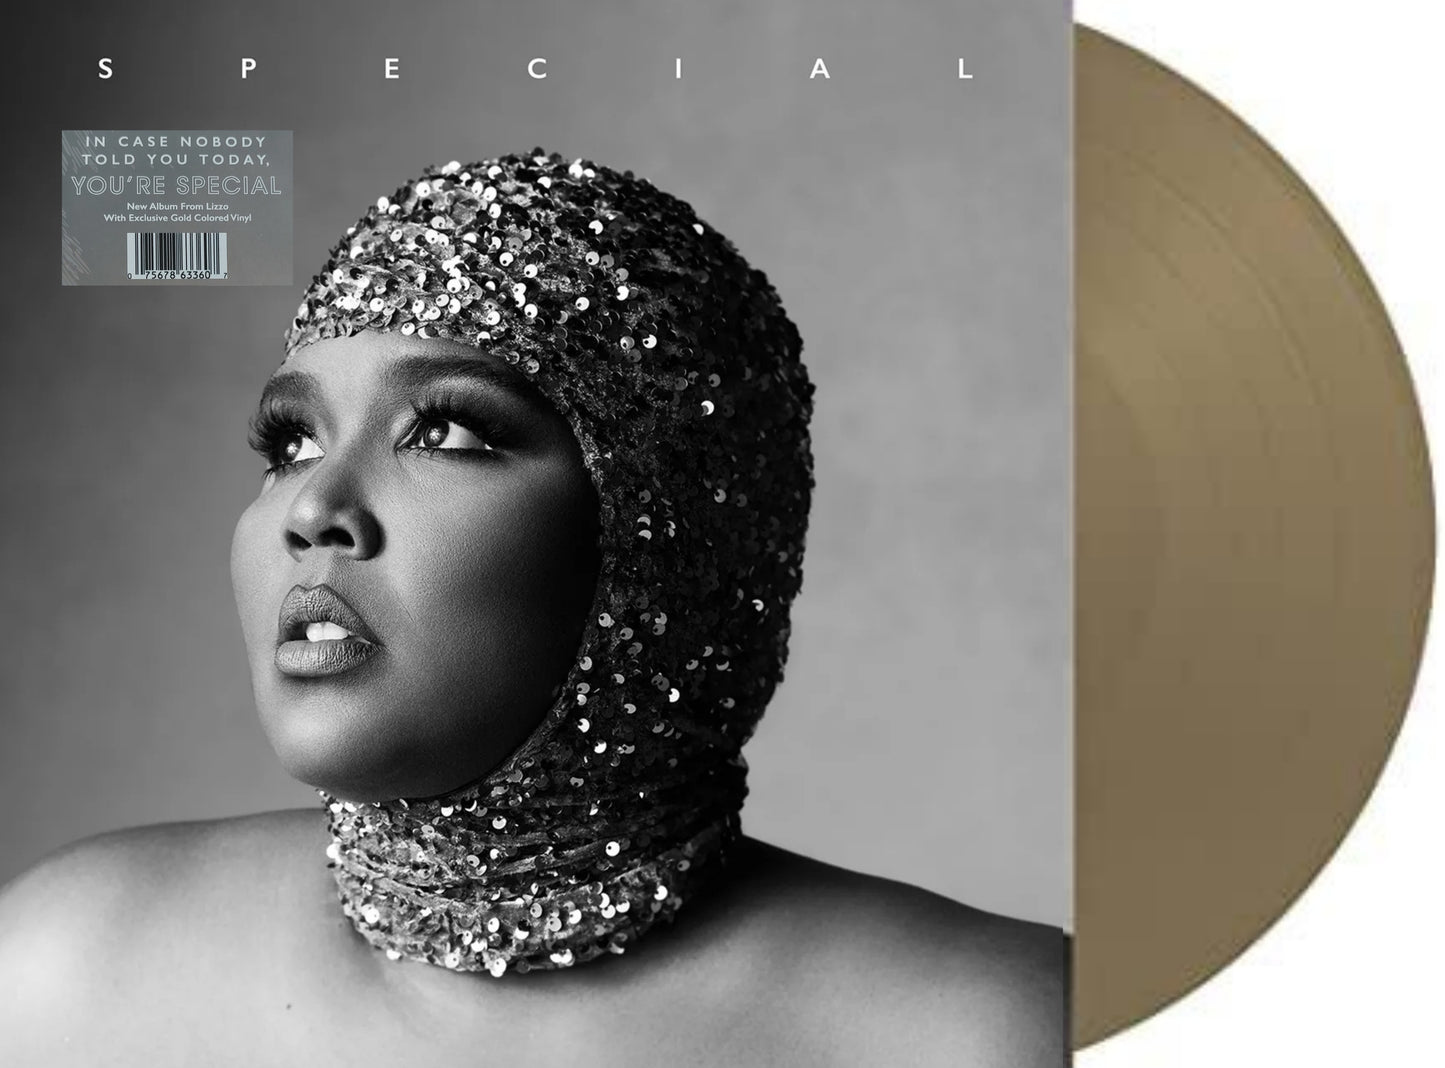 Lizzo: Special - Gold Vinyl LP - Exklusives Gold-Vinyl in limitierter Auflage